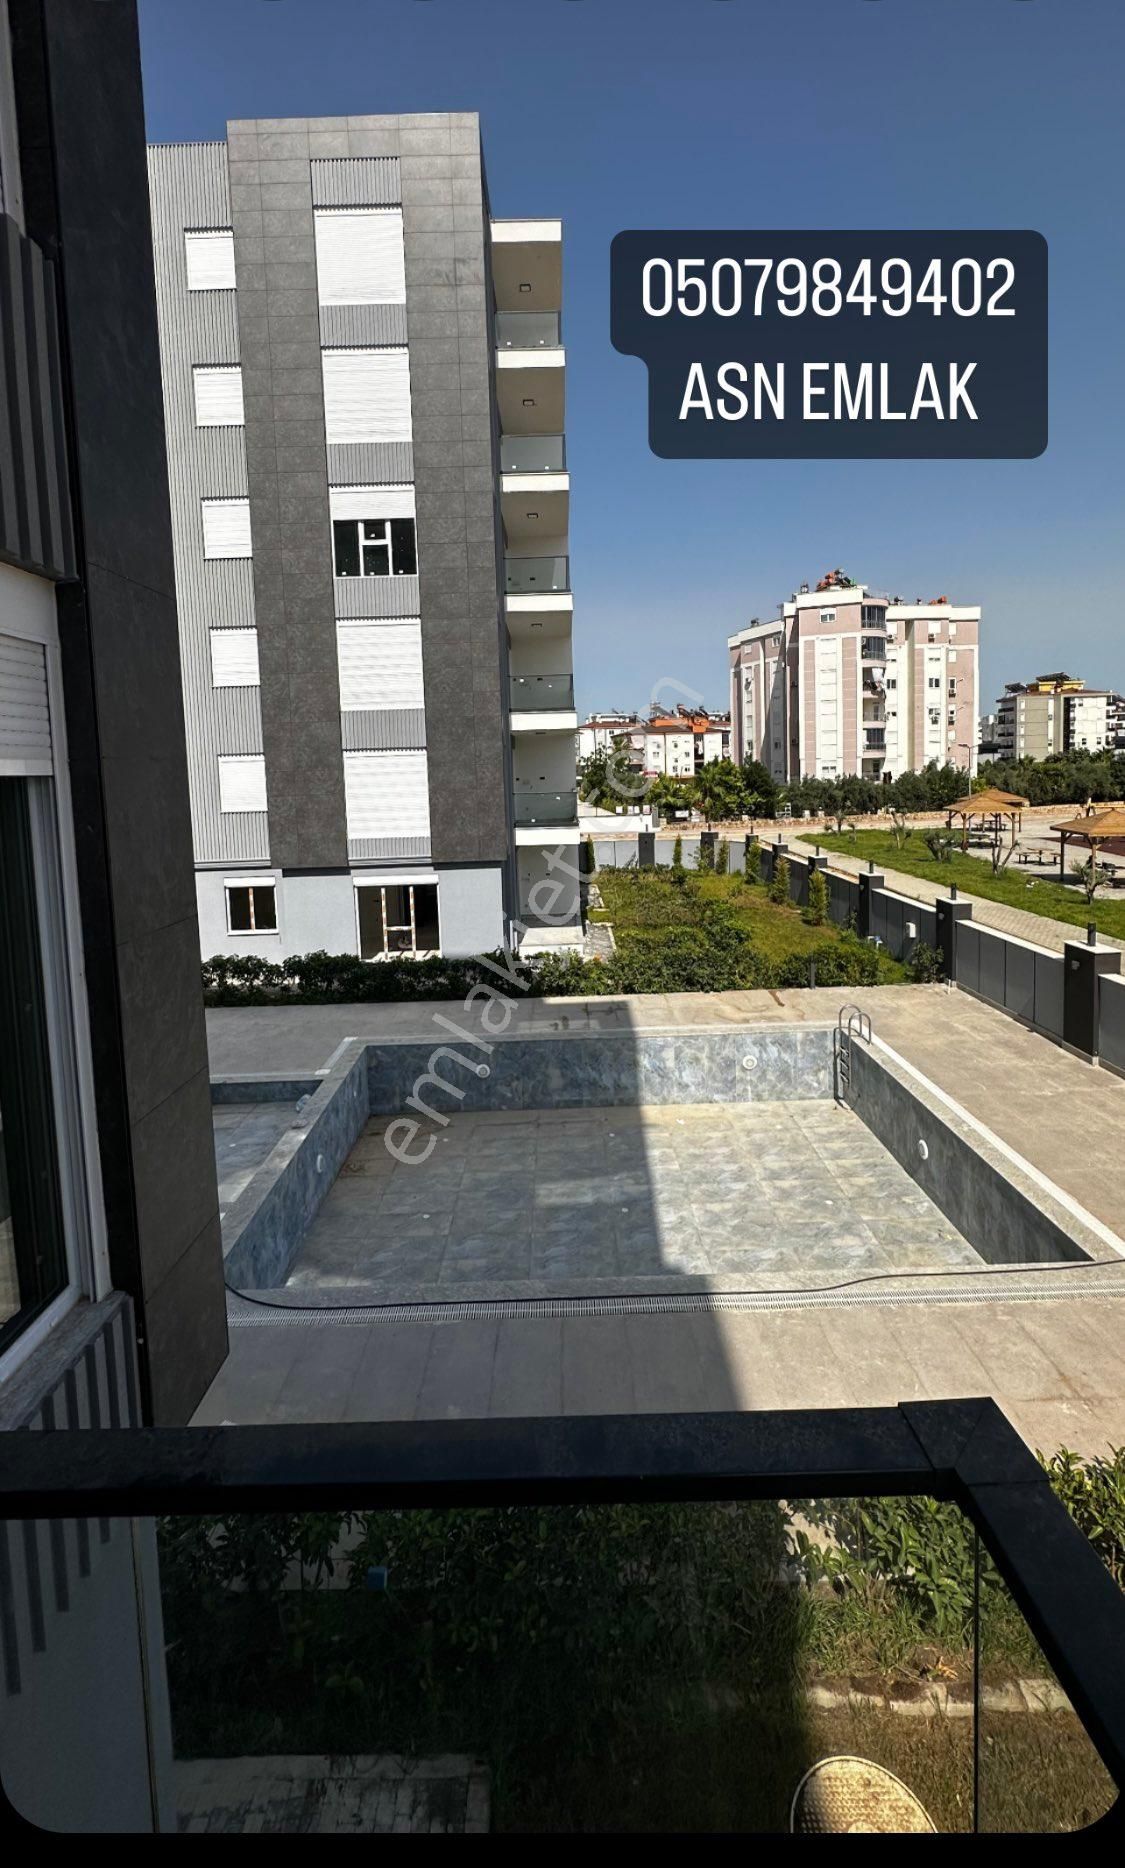 Kepez Hüsnü Karakaş Satılık Daire Antalya Kepez hüsnü karakaş mahallesi 3 + 1 lüks dairelerimiz satılıktır